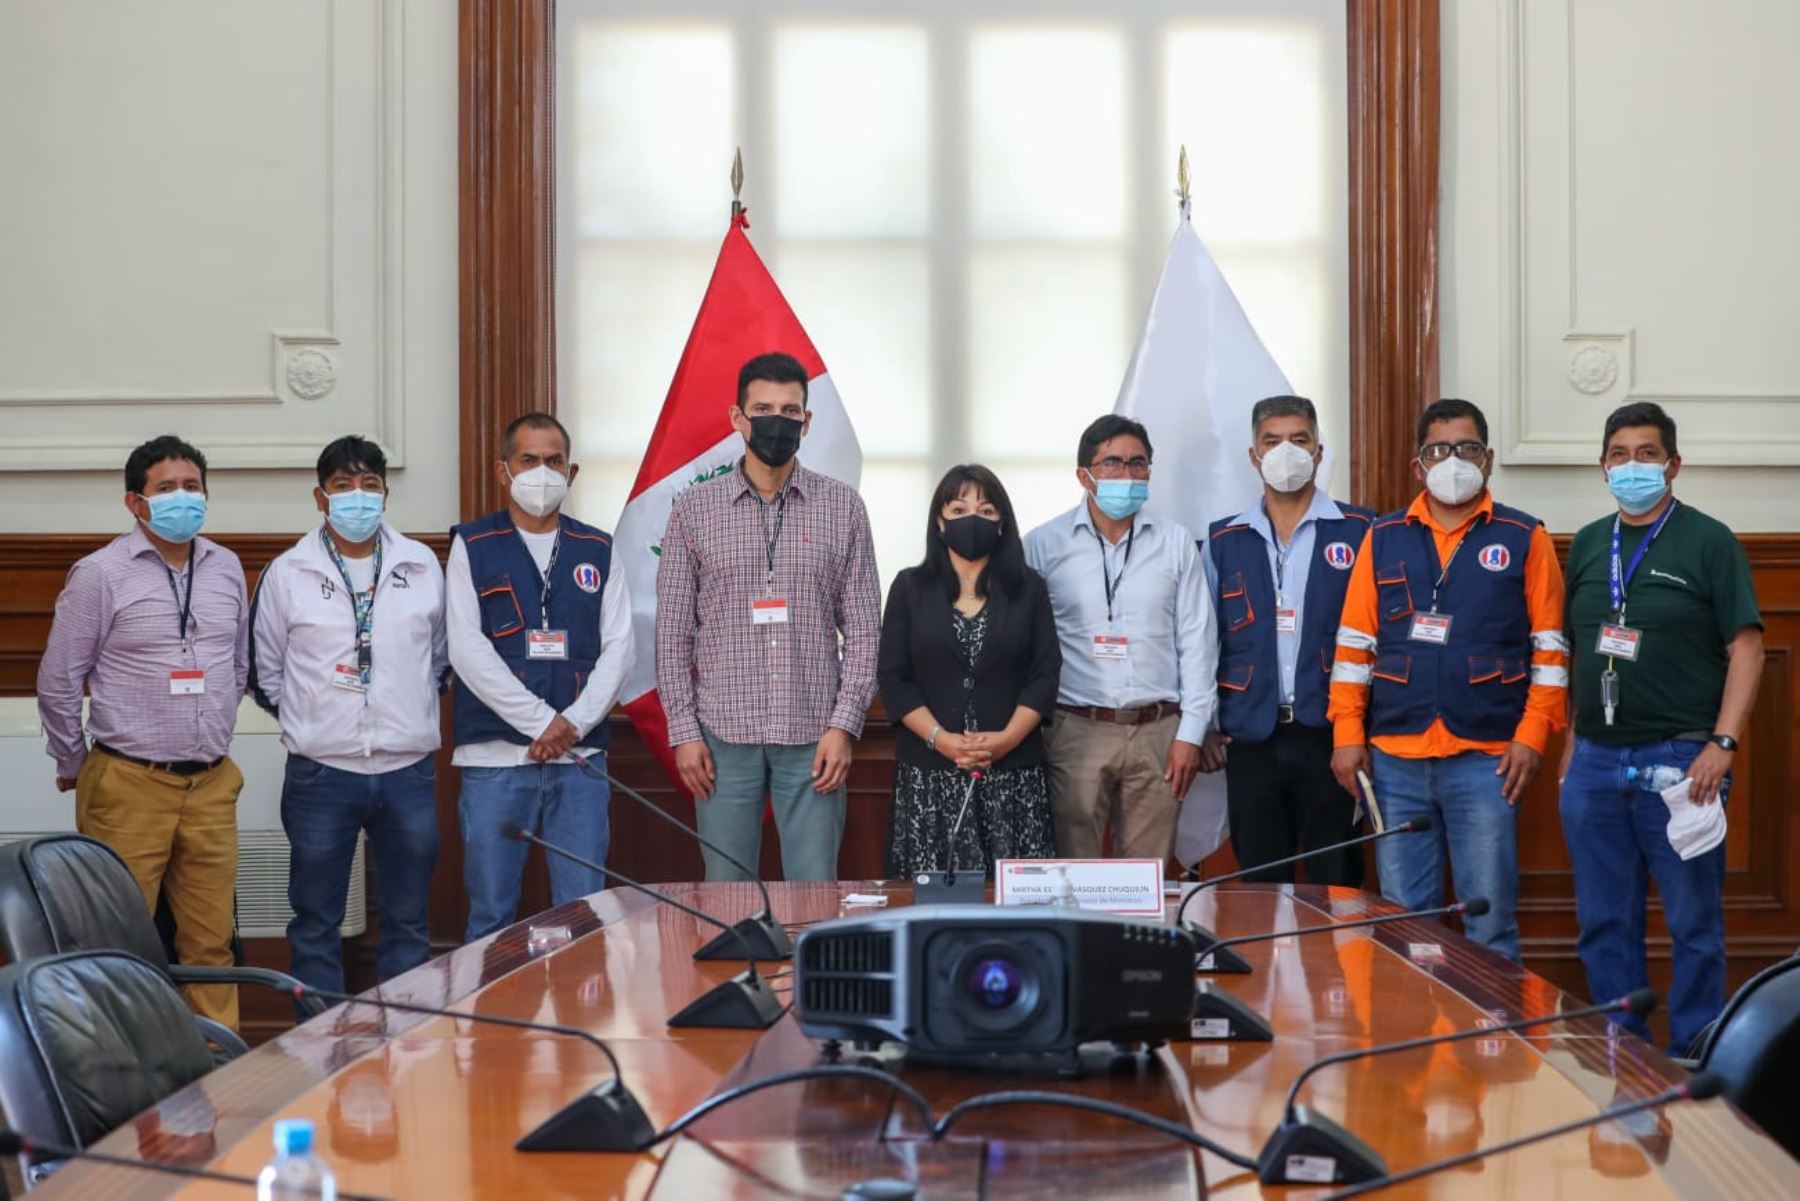 La jefa del Gabinete recibió al secretario general de la Federación Nacional de Trabajadores Mineros Metalúrgicos del Perú y a representantes de sindicatos. Foto: PCM